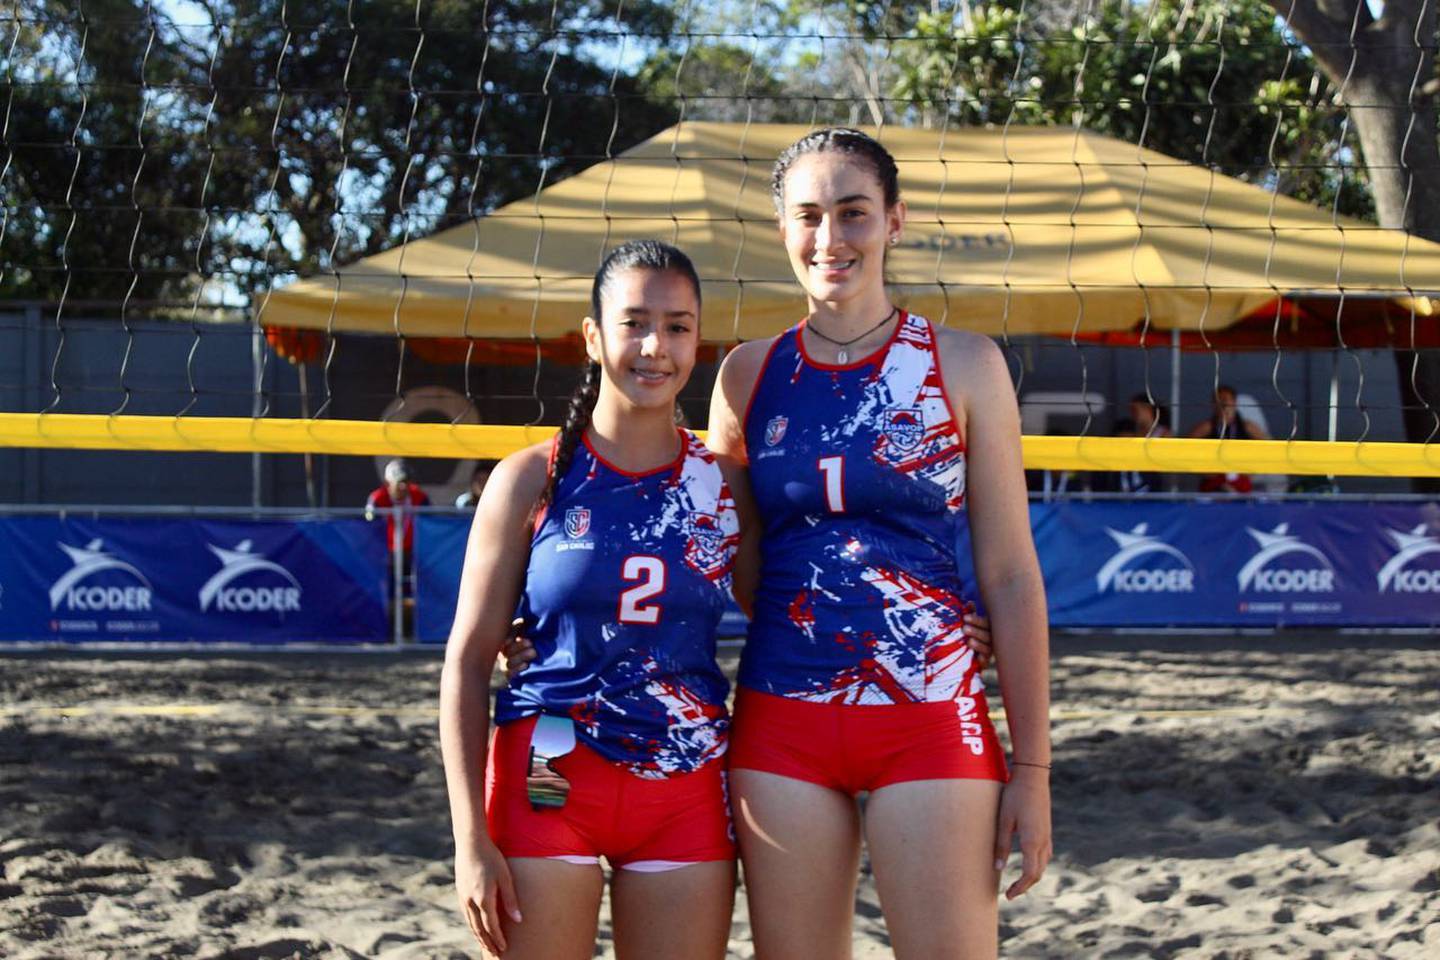 El equipo femenino de voleibol de playa Sub-19 de San Carlos lo integran Mariana Umaña Salas y Crystell Arce Picado. Ellas participaron en la edición 40 de los Juegos Deportivos Nacionales Icoder 2022-2023. Ganaron la medalla de bronce.